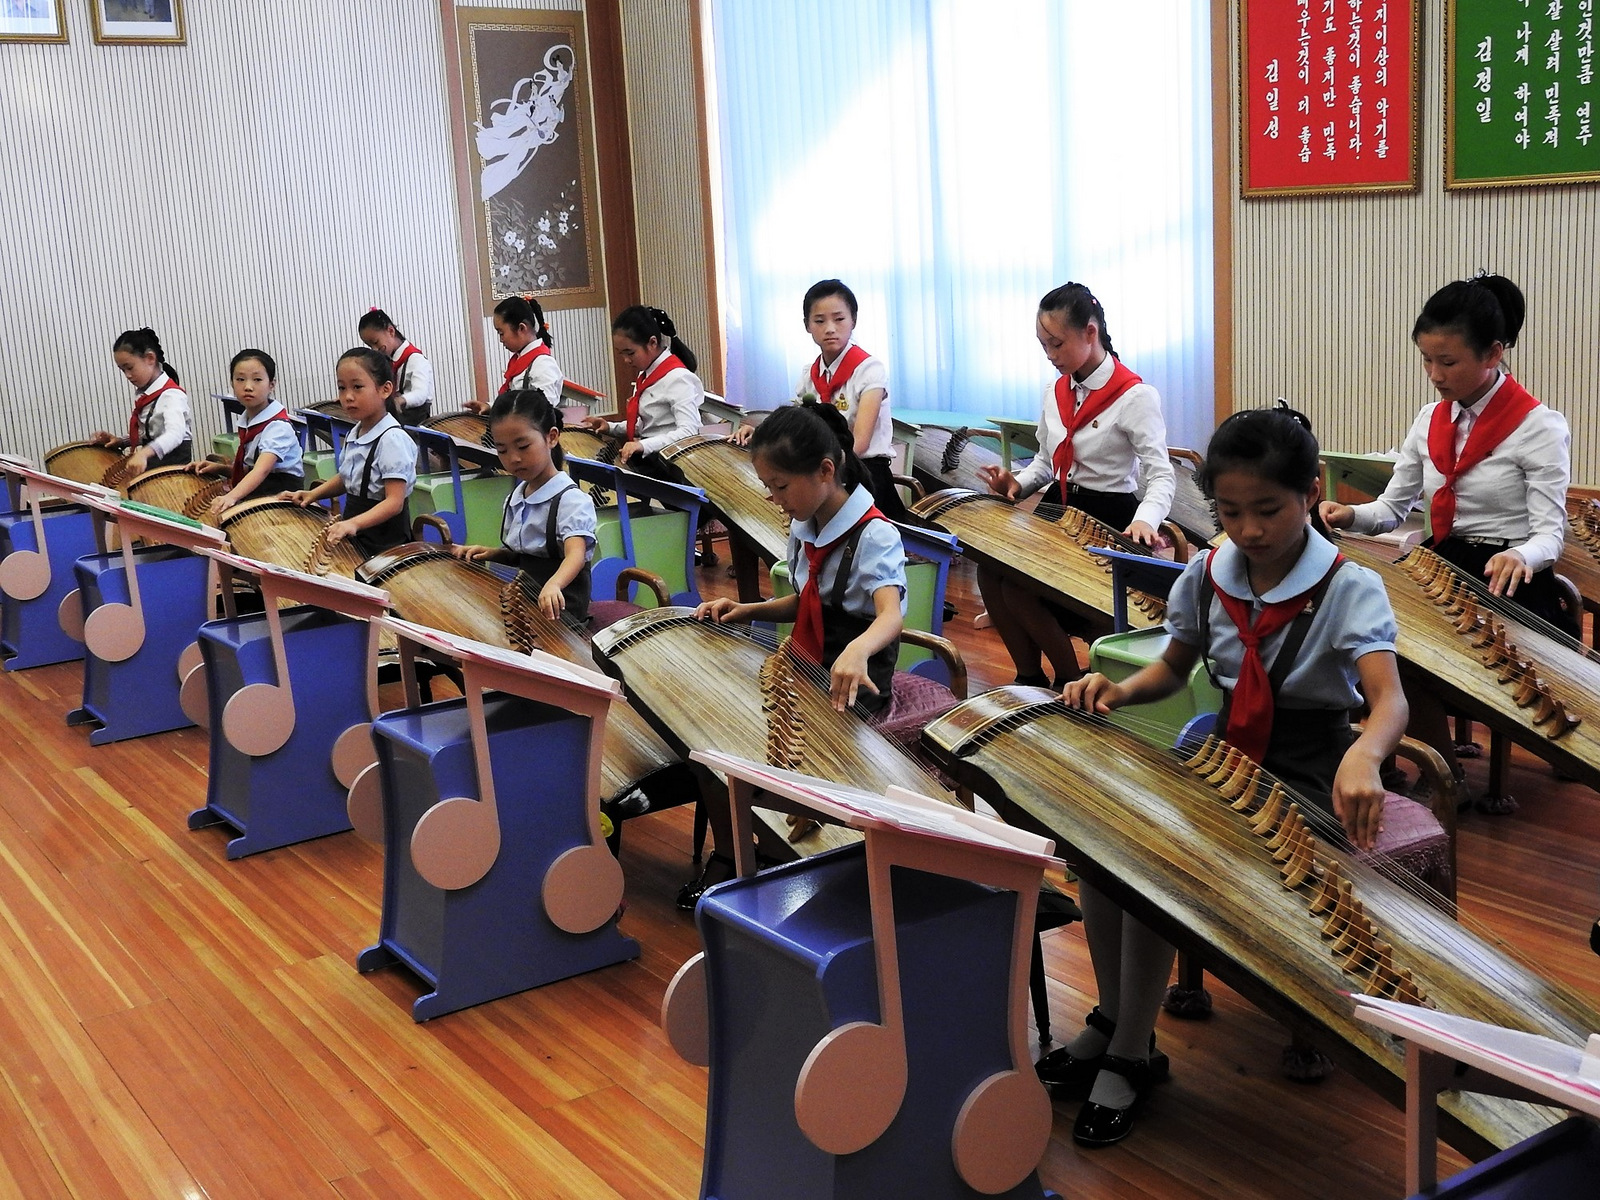 Estudiantes en el Mangyongdae Children's Palace tocando el instrumento tradicional coreano, el kayagun. Escucha su actuación aquí.